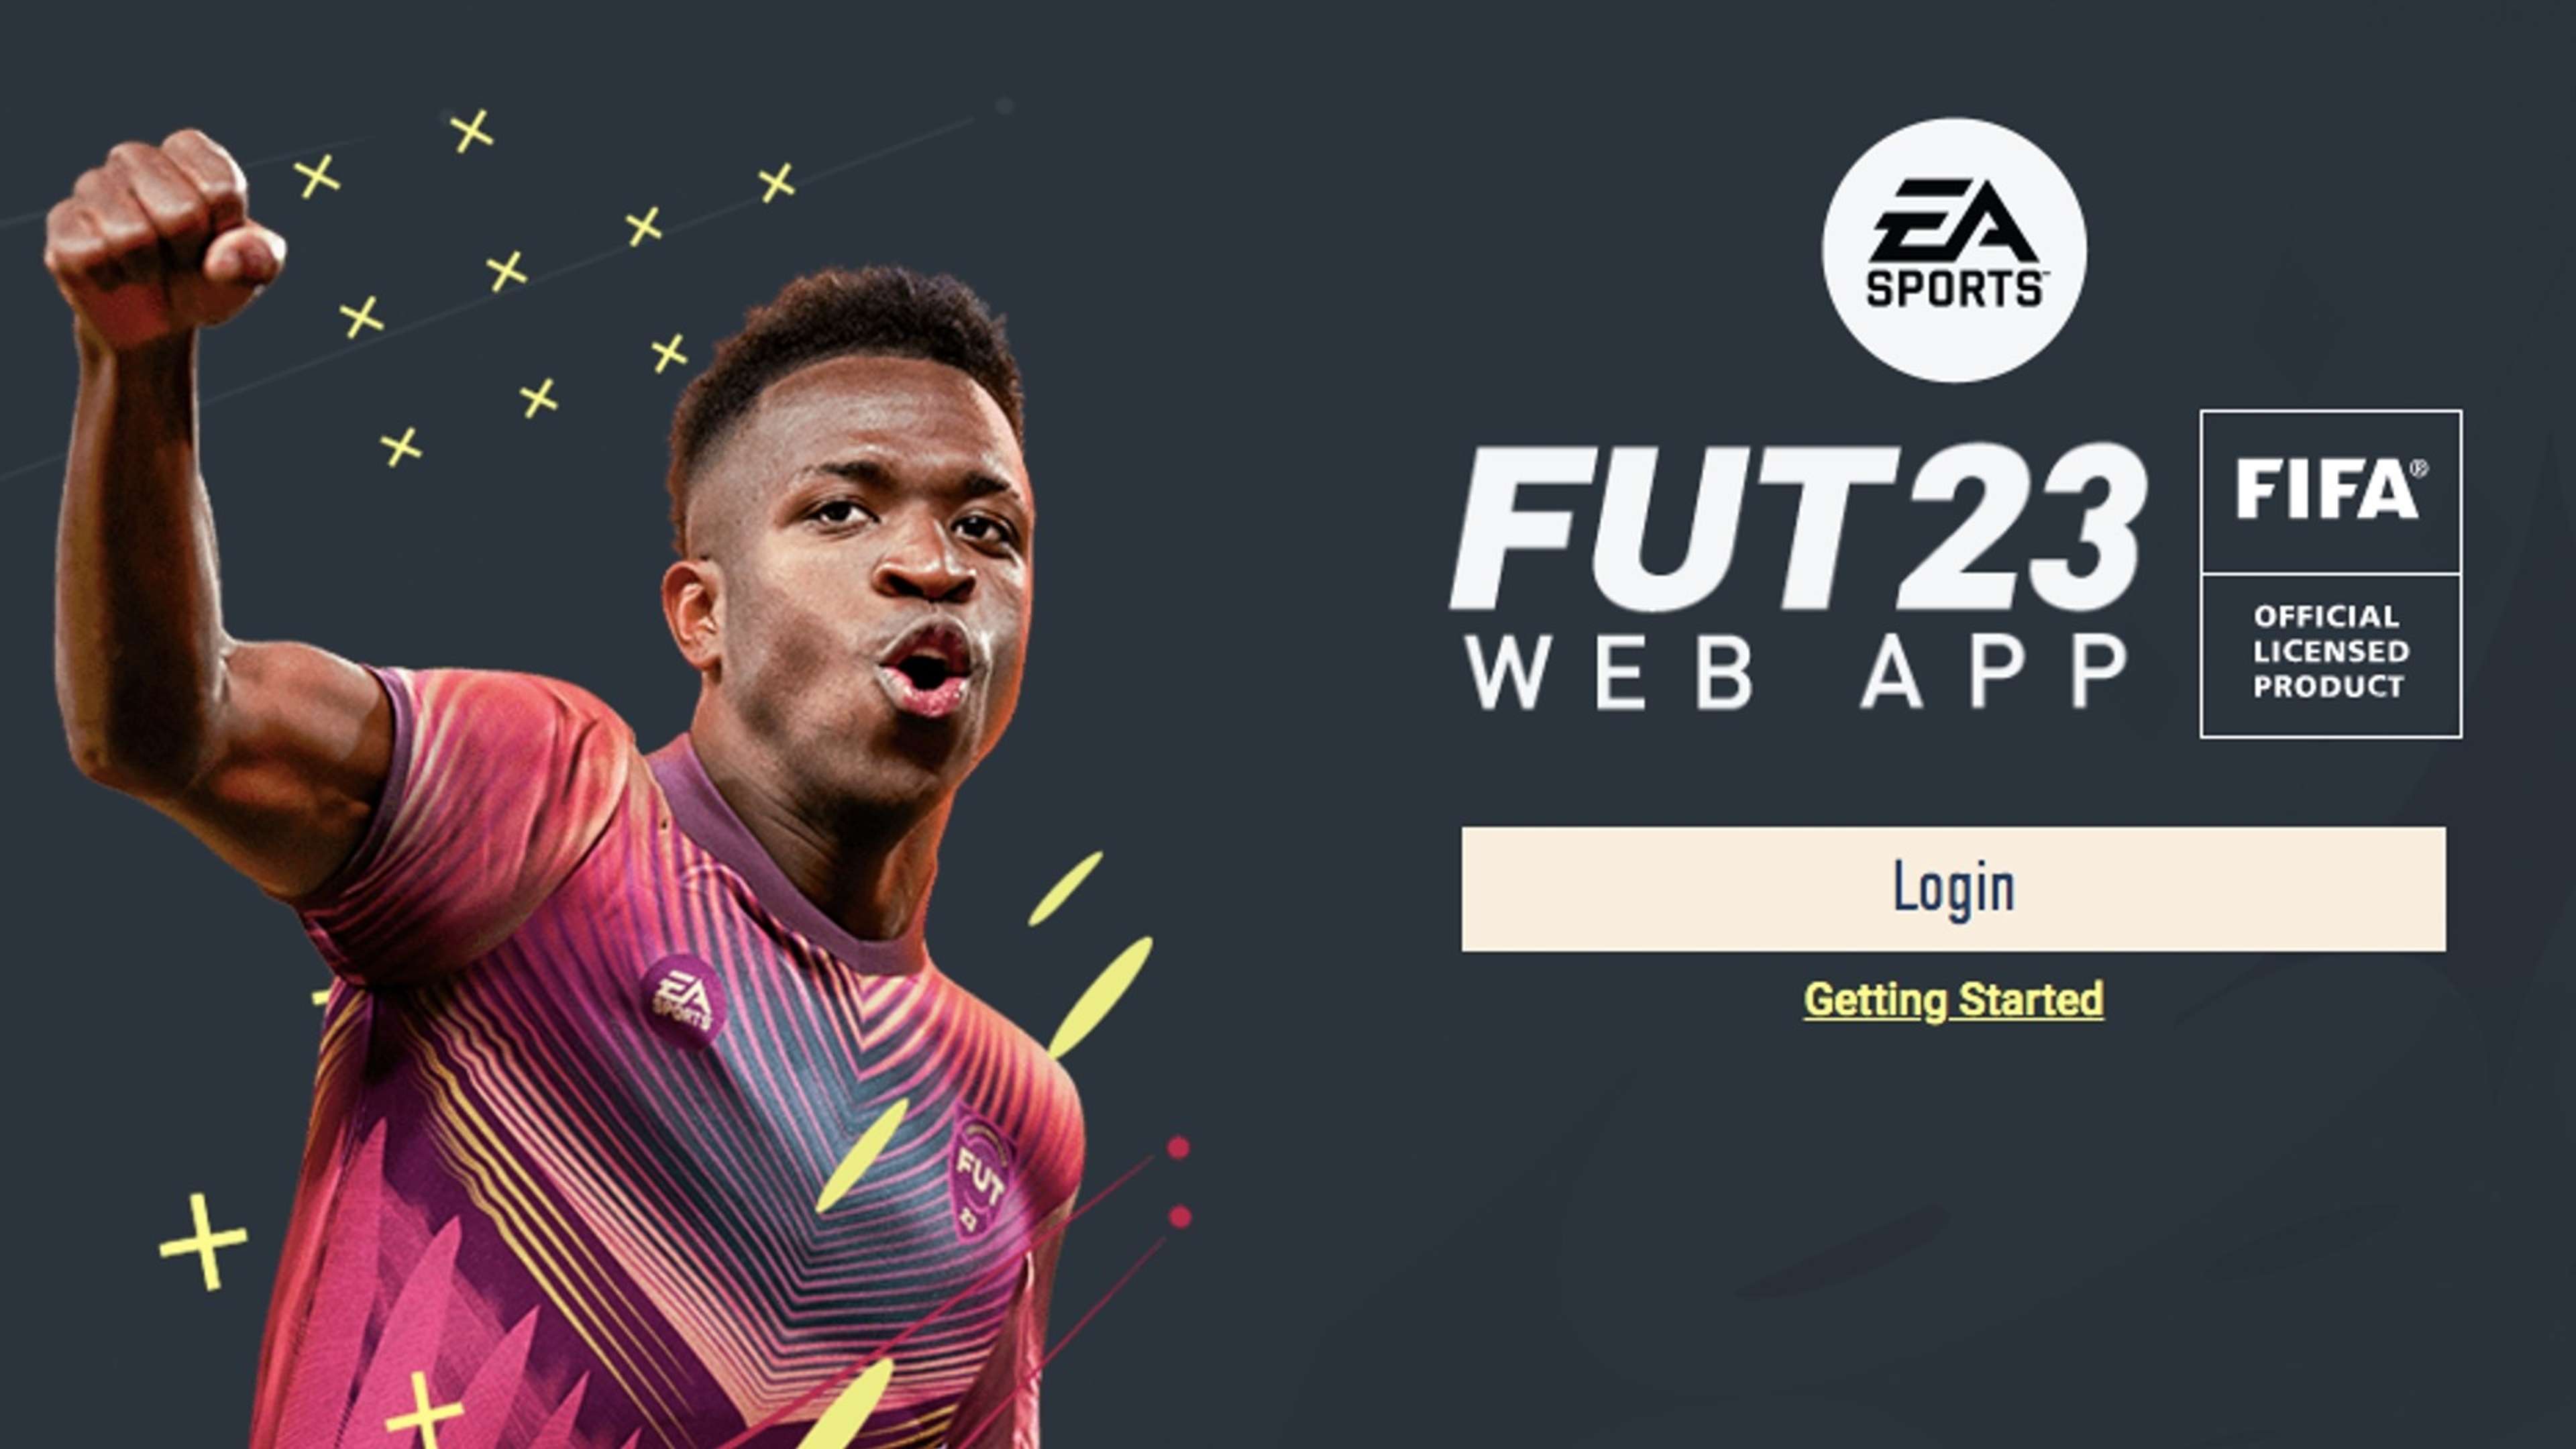 FIFA 23 web app